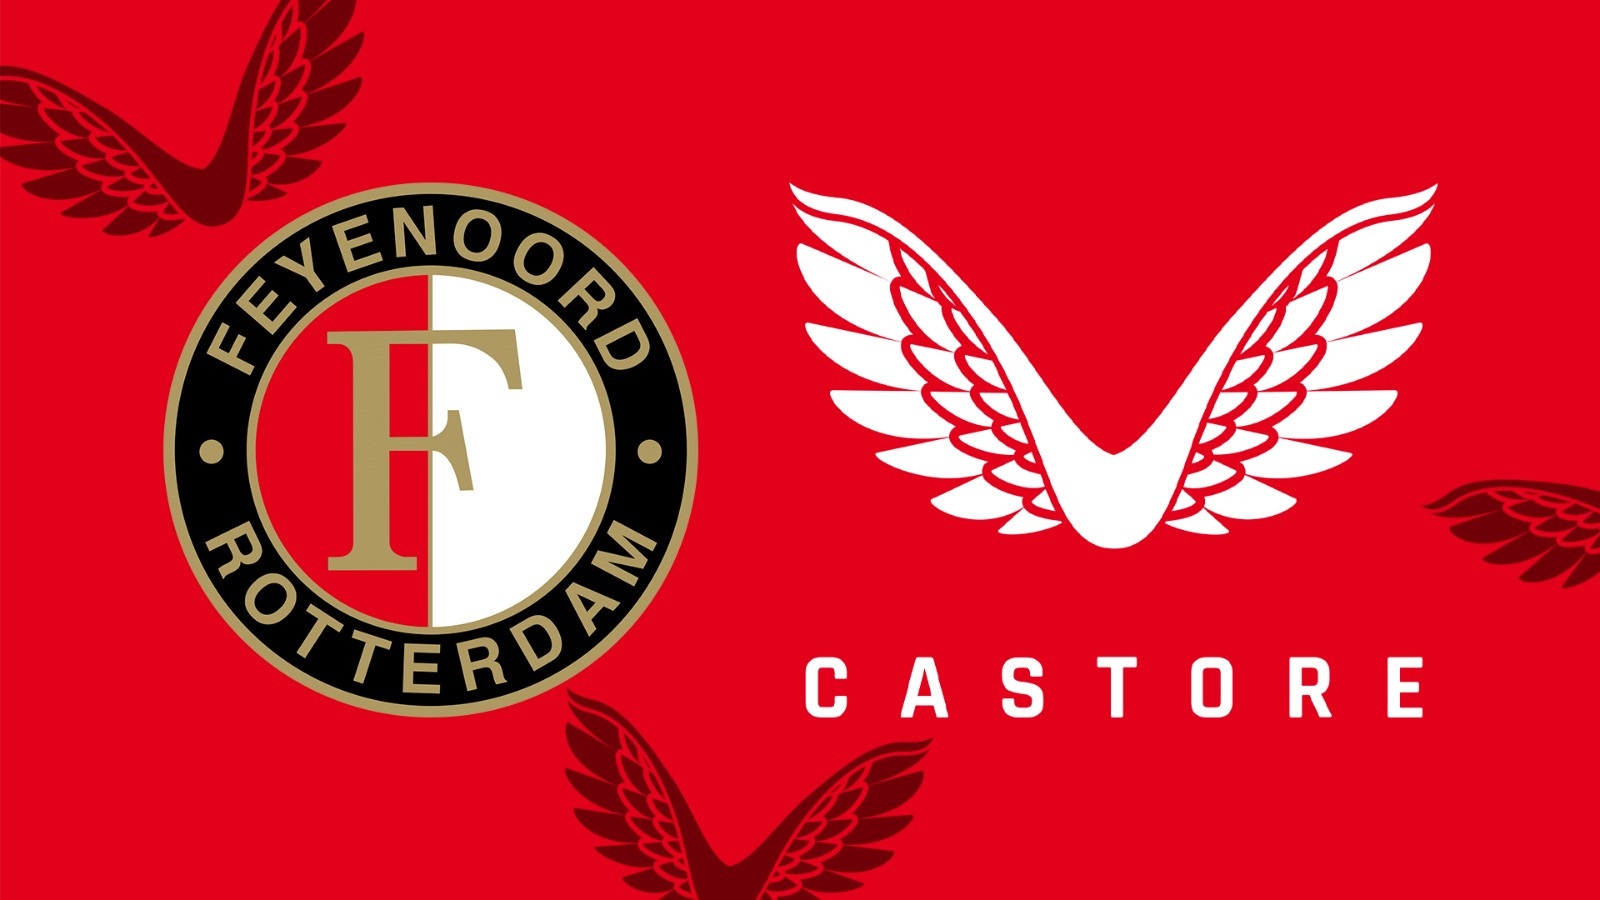 De volgende details van de deal tussen Feyenoord en Castore